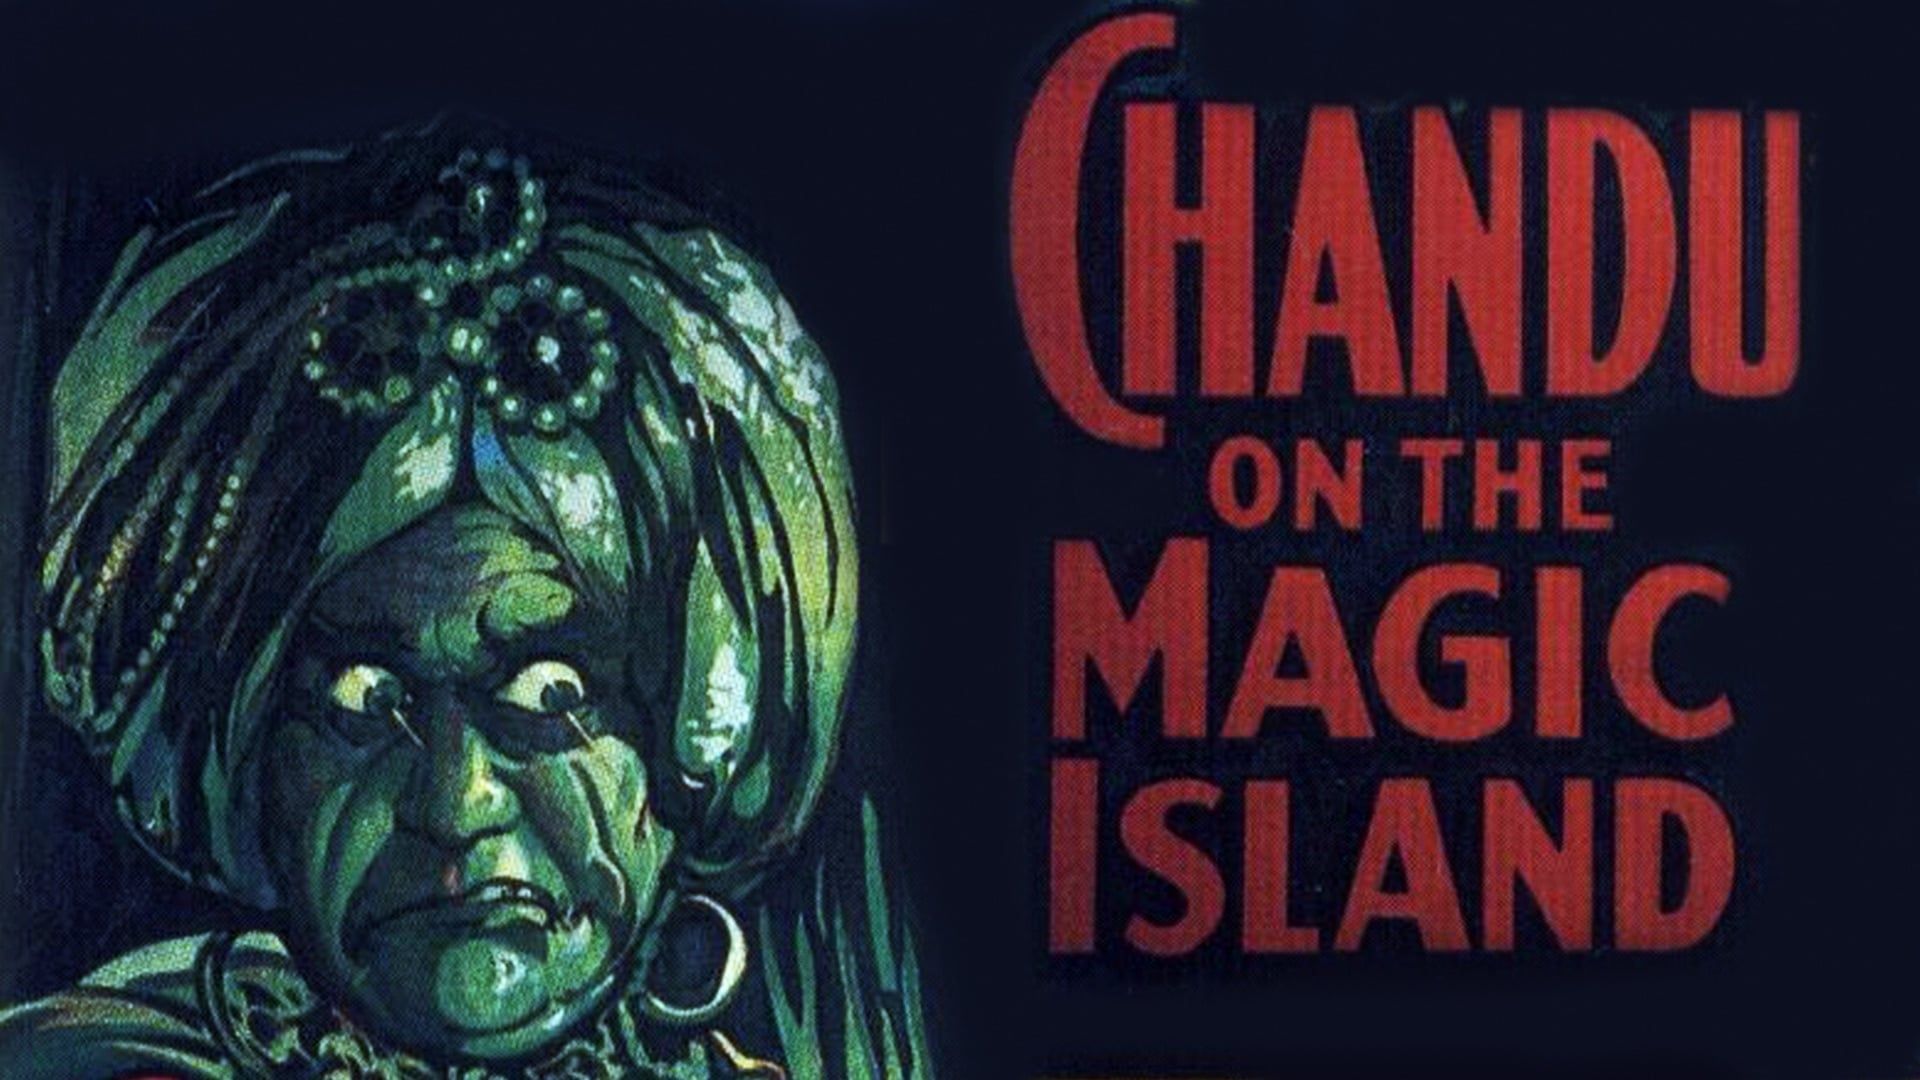 Chandu on the Magic Island background